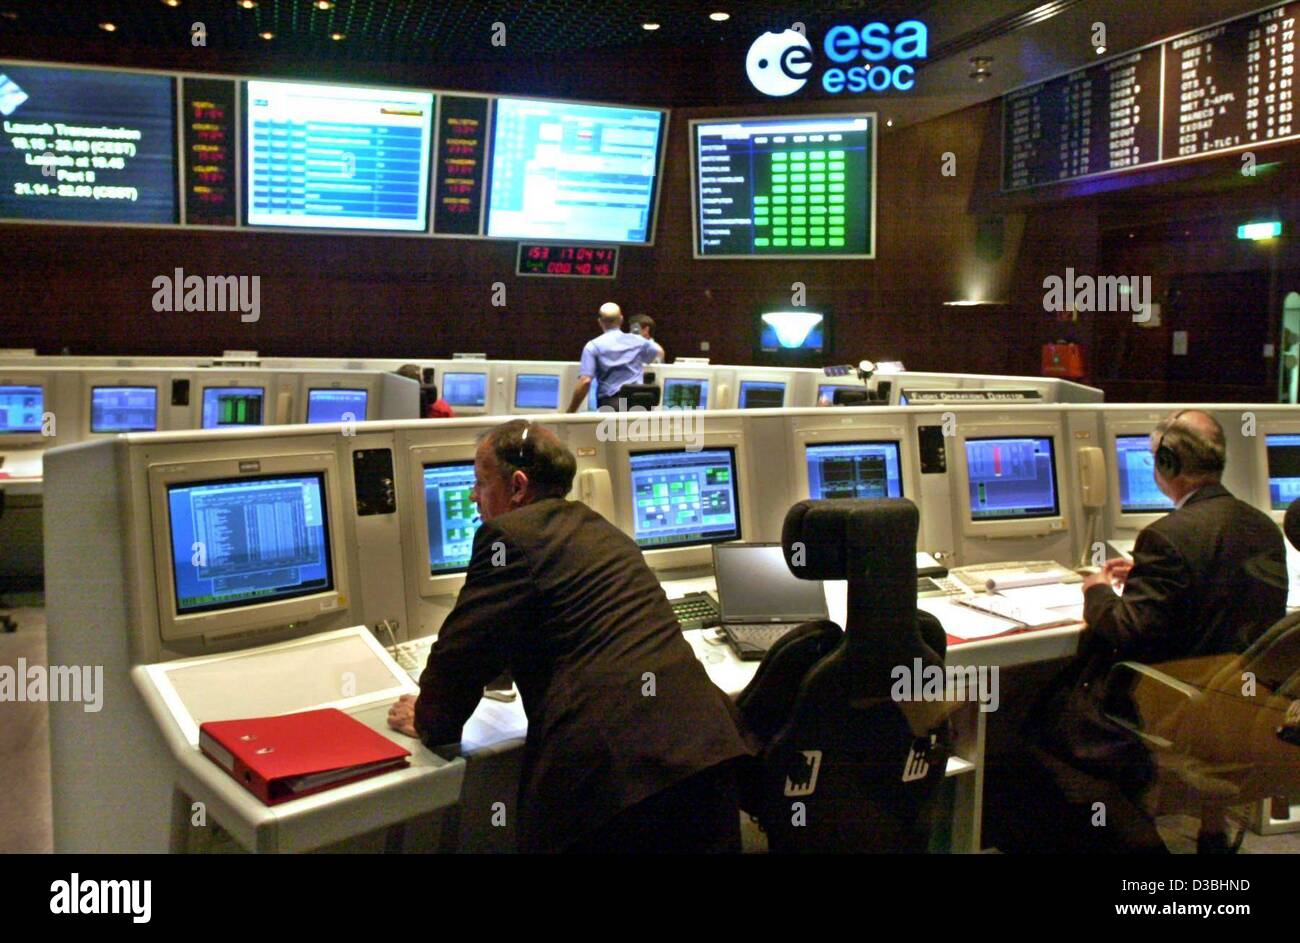 (Dpa) - Científicos de sentarse delante de los monitores y seguir la fase de lanzamiento de la sonda espacial planetaria Europea 'mars Express' en el centro de control de misión (ESOC) de la Agencia Espacial Europea (ESA) en Darmstadt, Alemania, 2 de junio de 2003. La sonda fue lanzada desde el cosmódromo ruso de Baikonur y yo Foto de stock